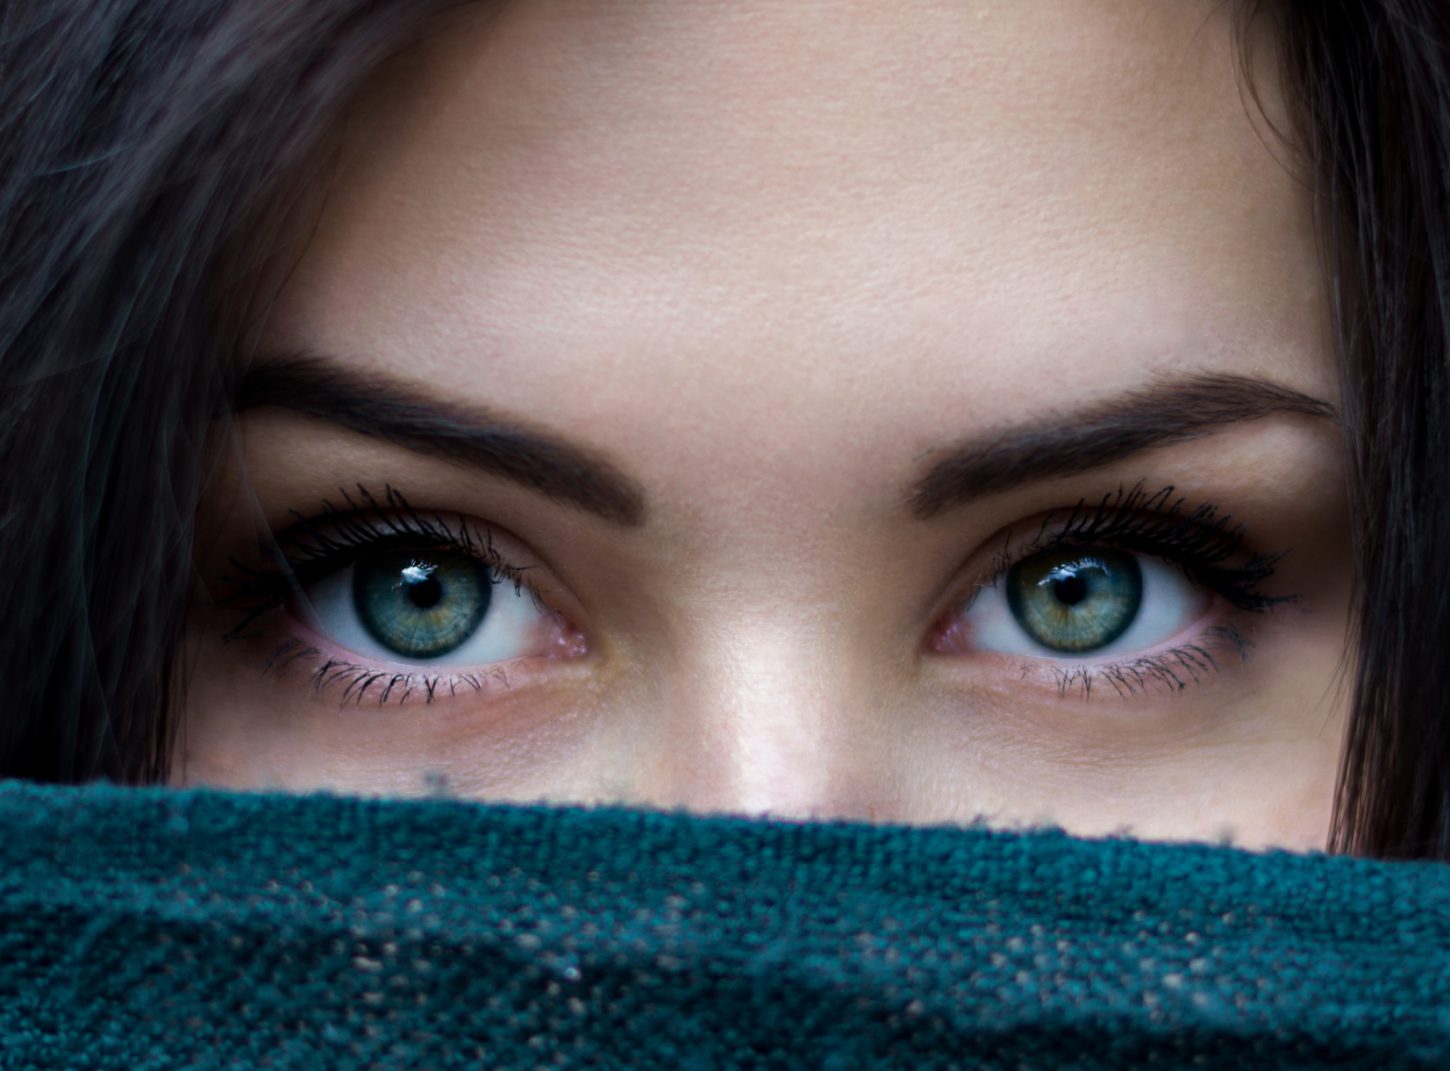 Grün-blaue Augen einer Frau.